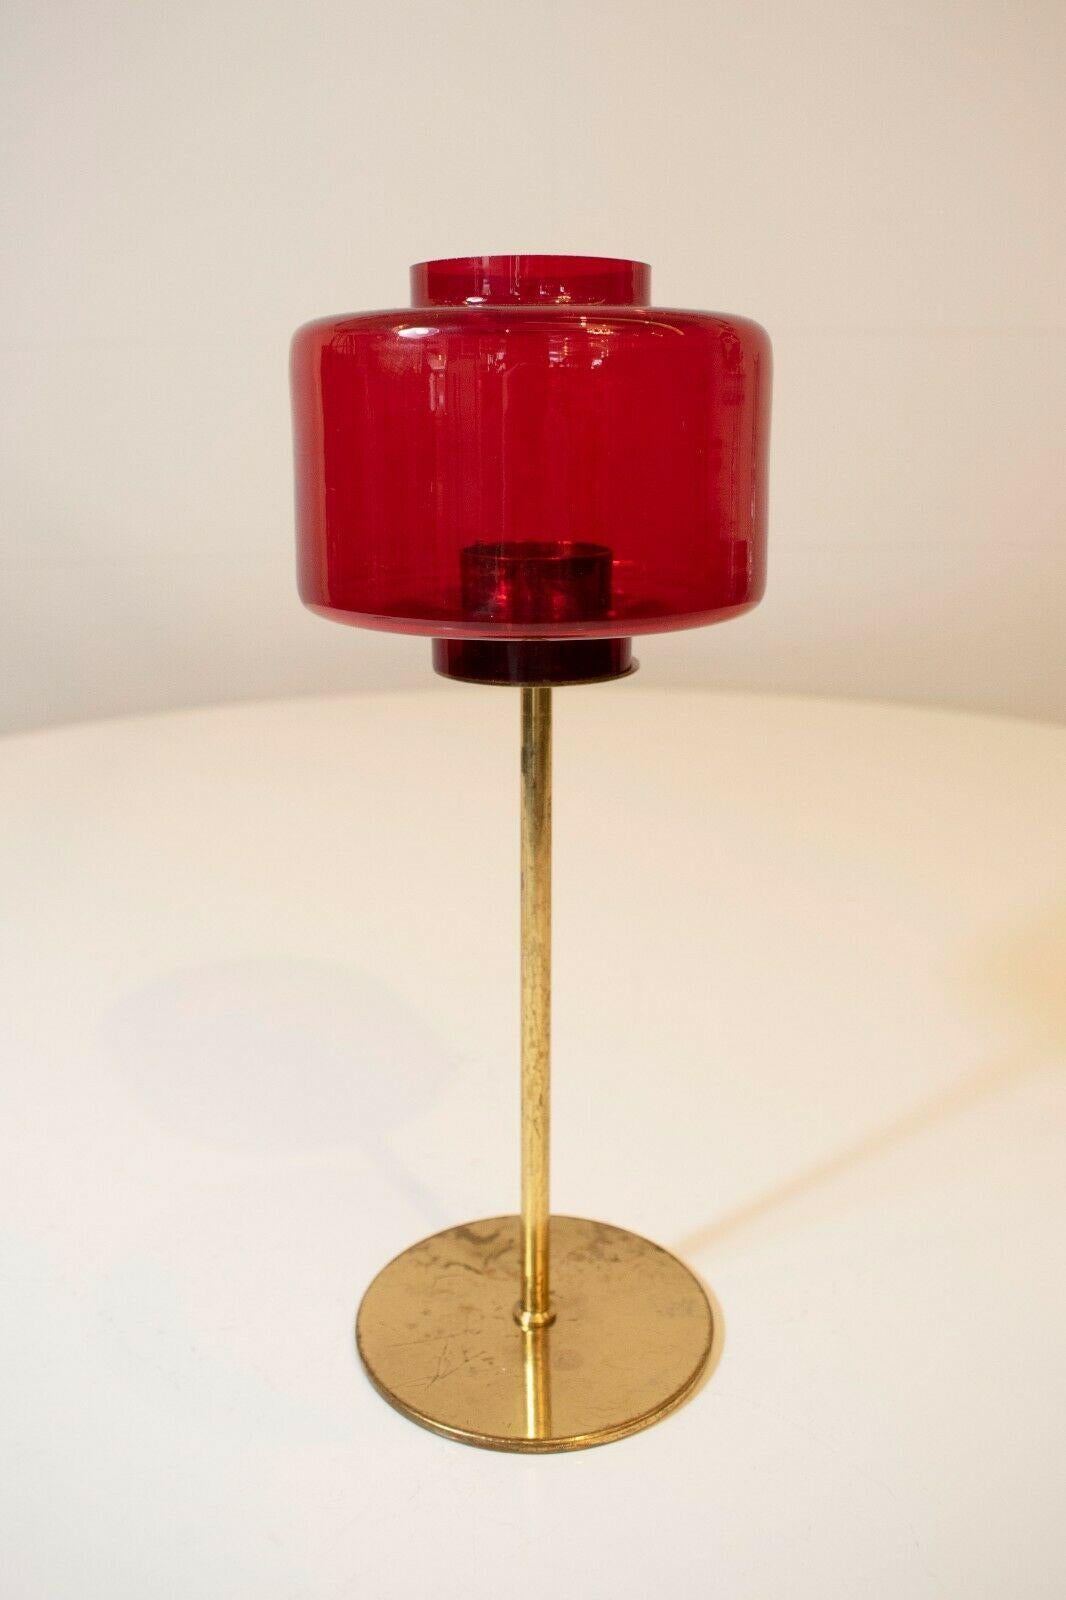 Ce bougeoir rare et de collection a été fabriqué en Suède dans les années 1960 et conçu par Hans-agne Jakobsson. 

Un plateau carré rouge posé sur une élégante base en laiton, cette pièce présente une patine originale et authentique. Il présente des